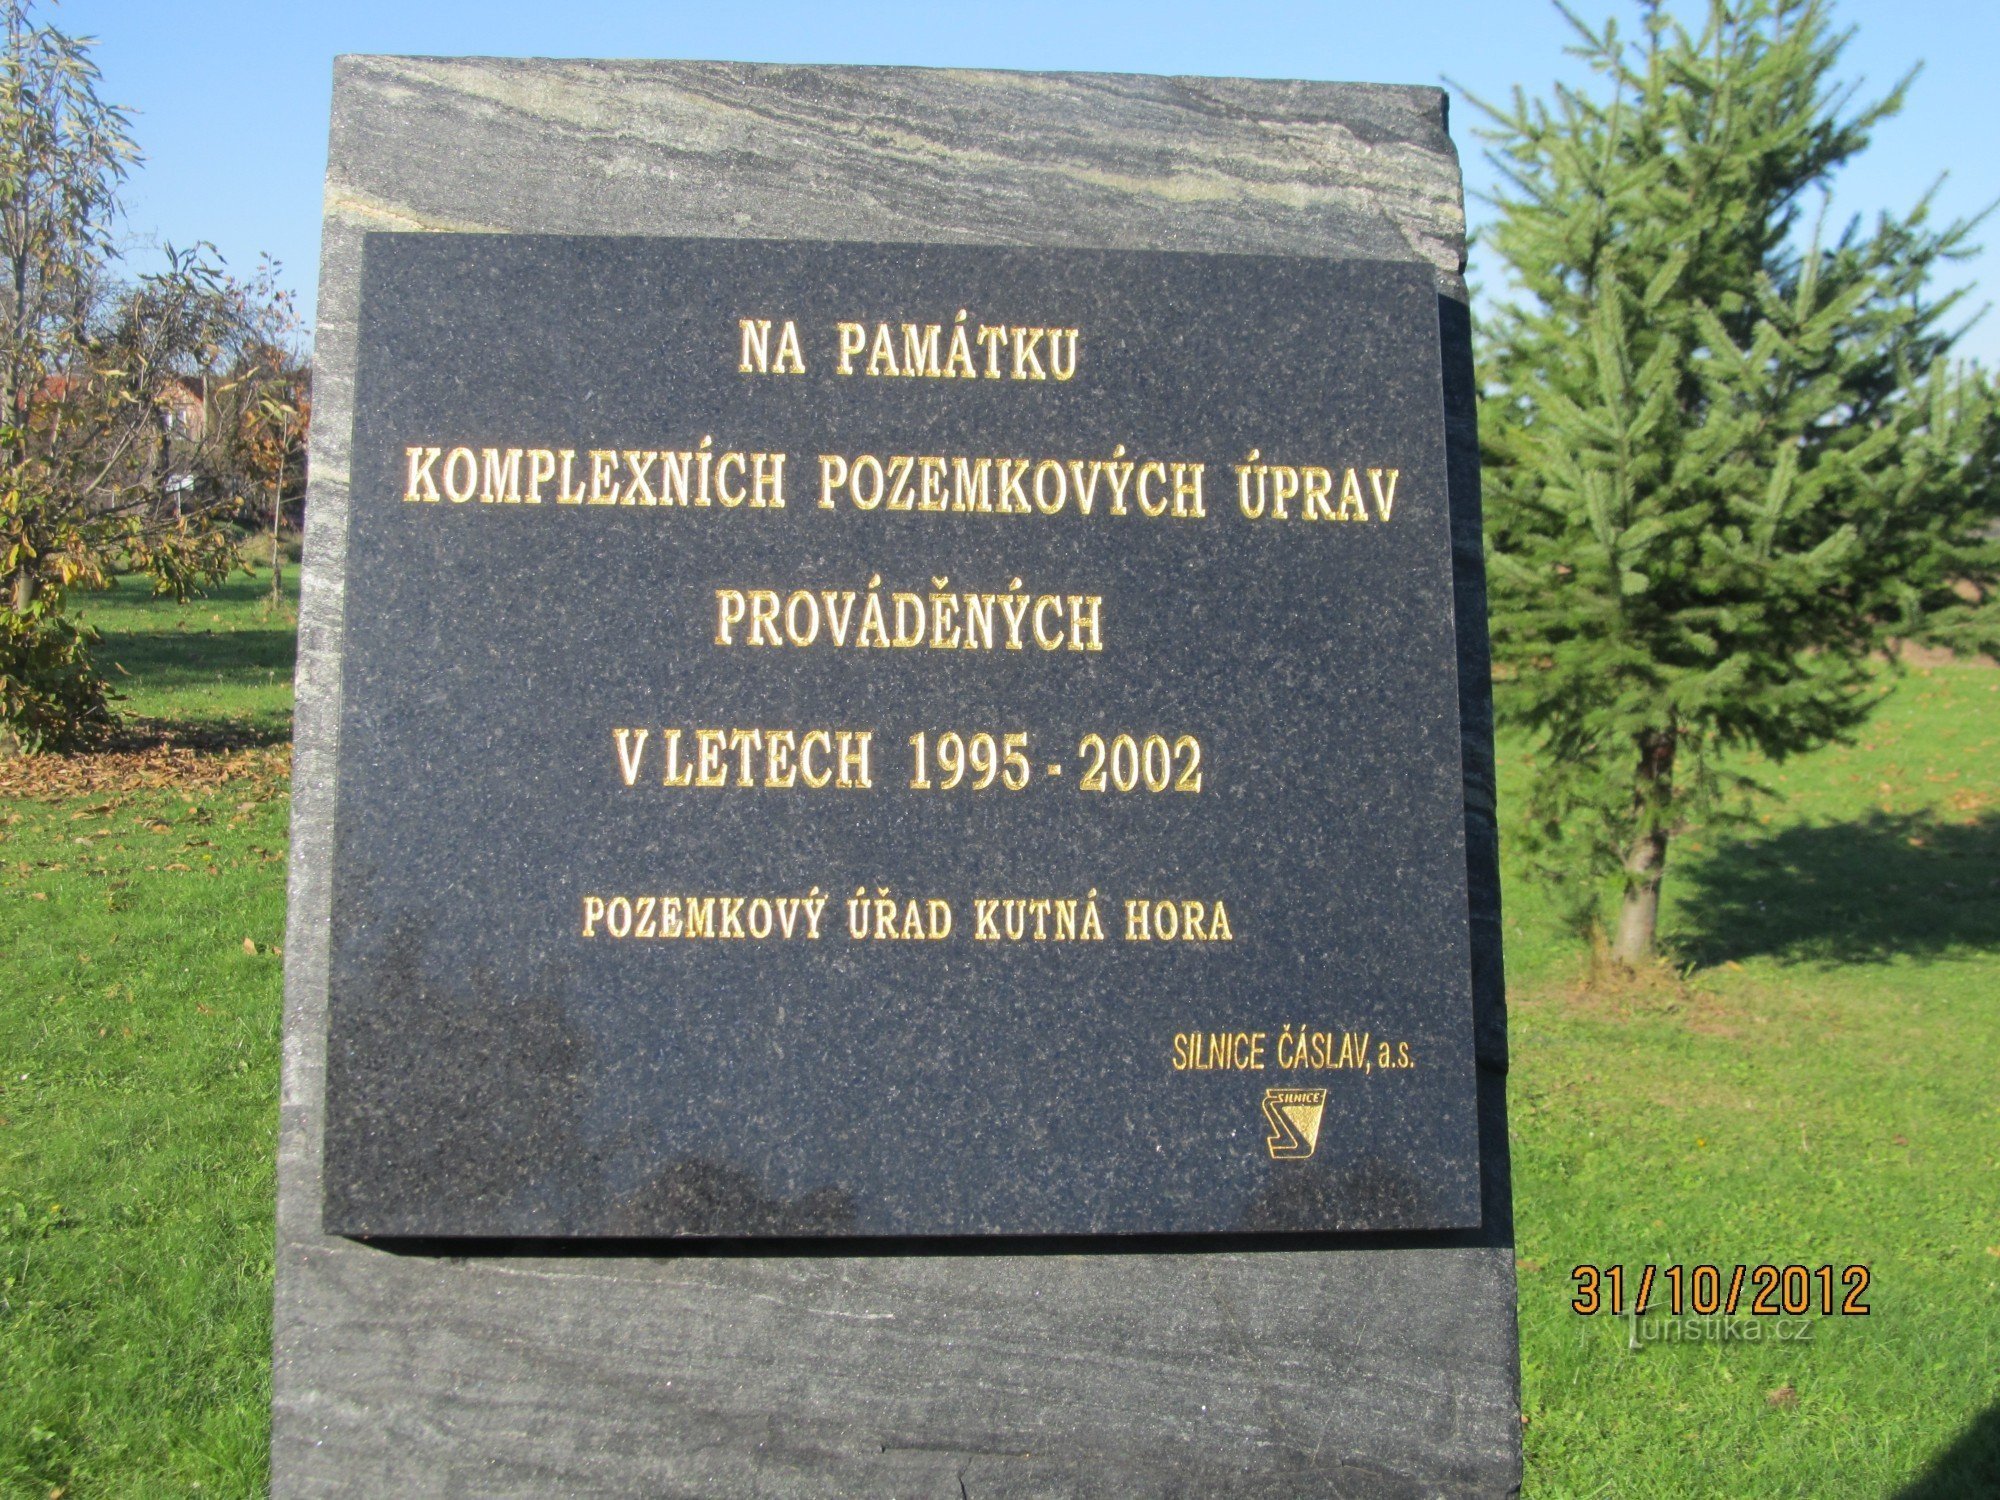 Spomenik v Hlízovu pred pokopališčem - napis na spomeniku